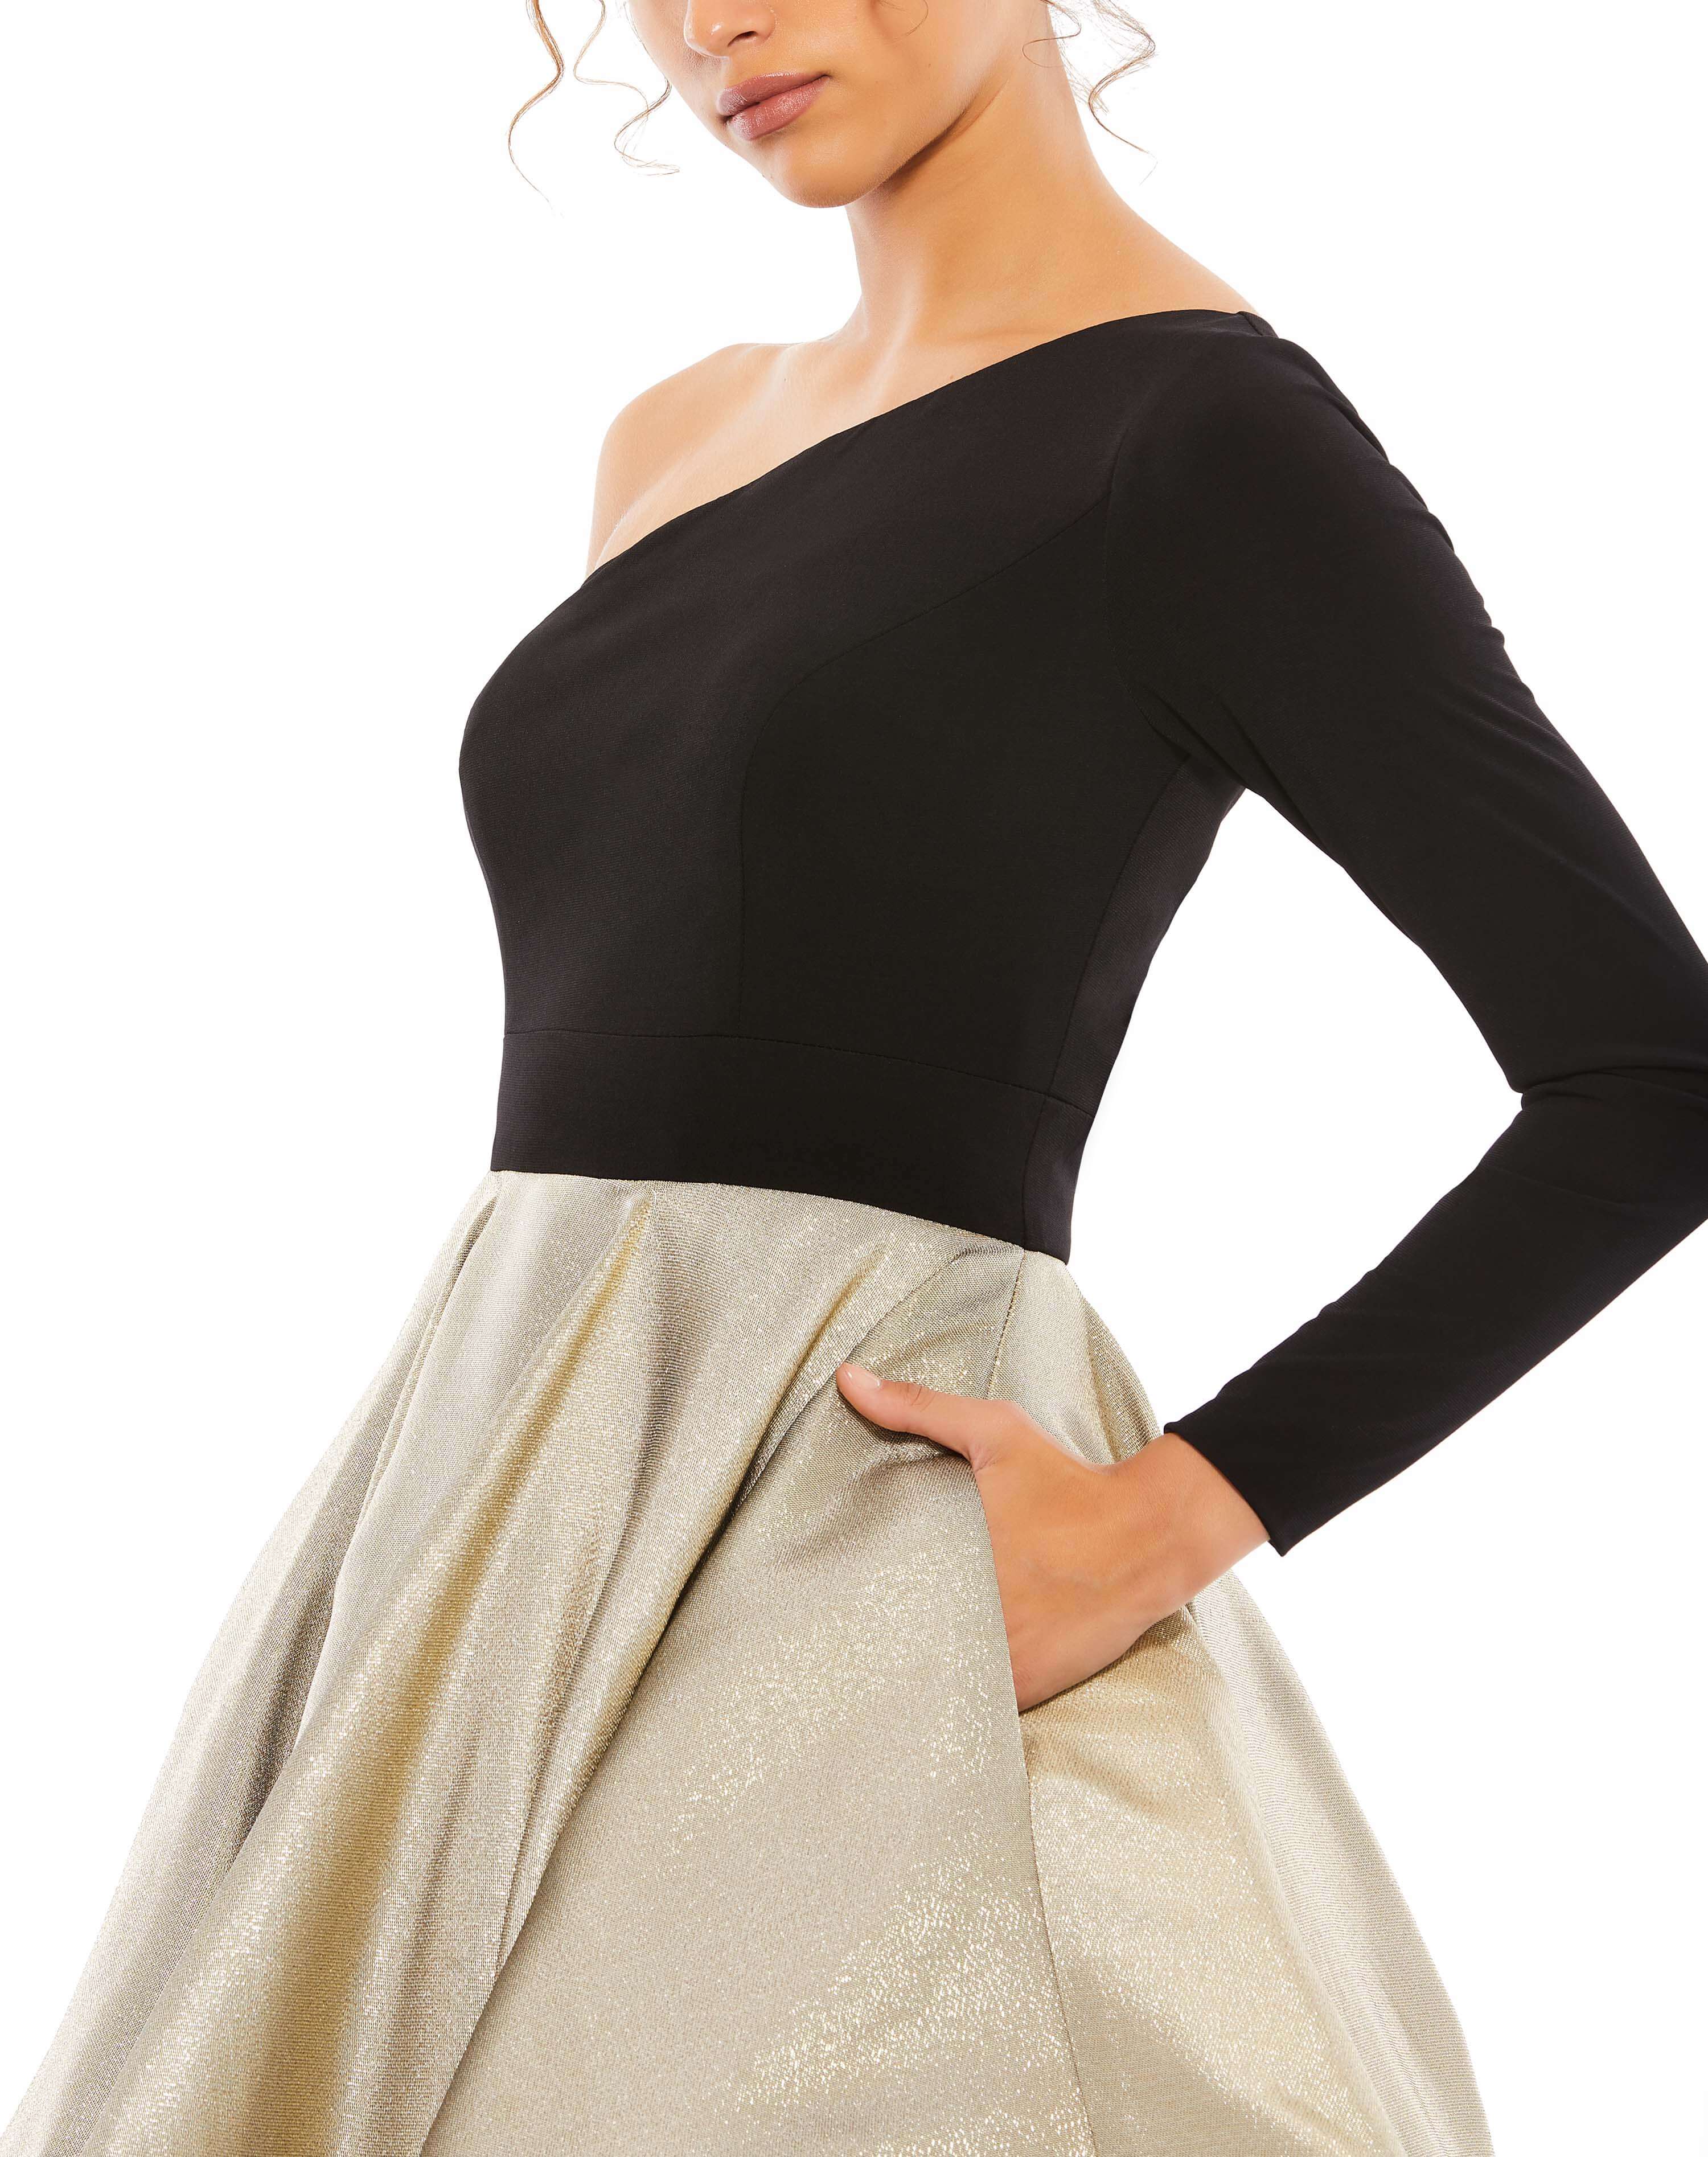 Black & Gold One Shoulder A-Line Dress - FINAL SALE